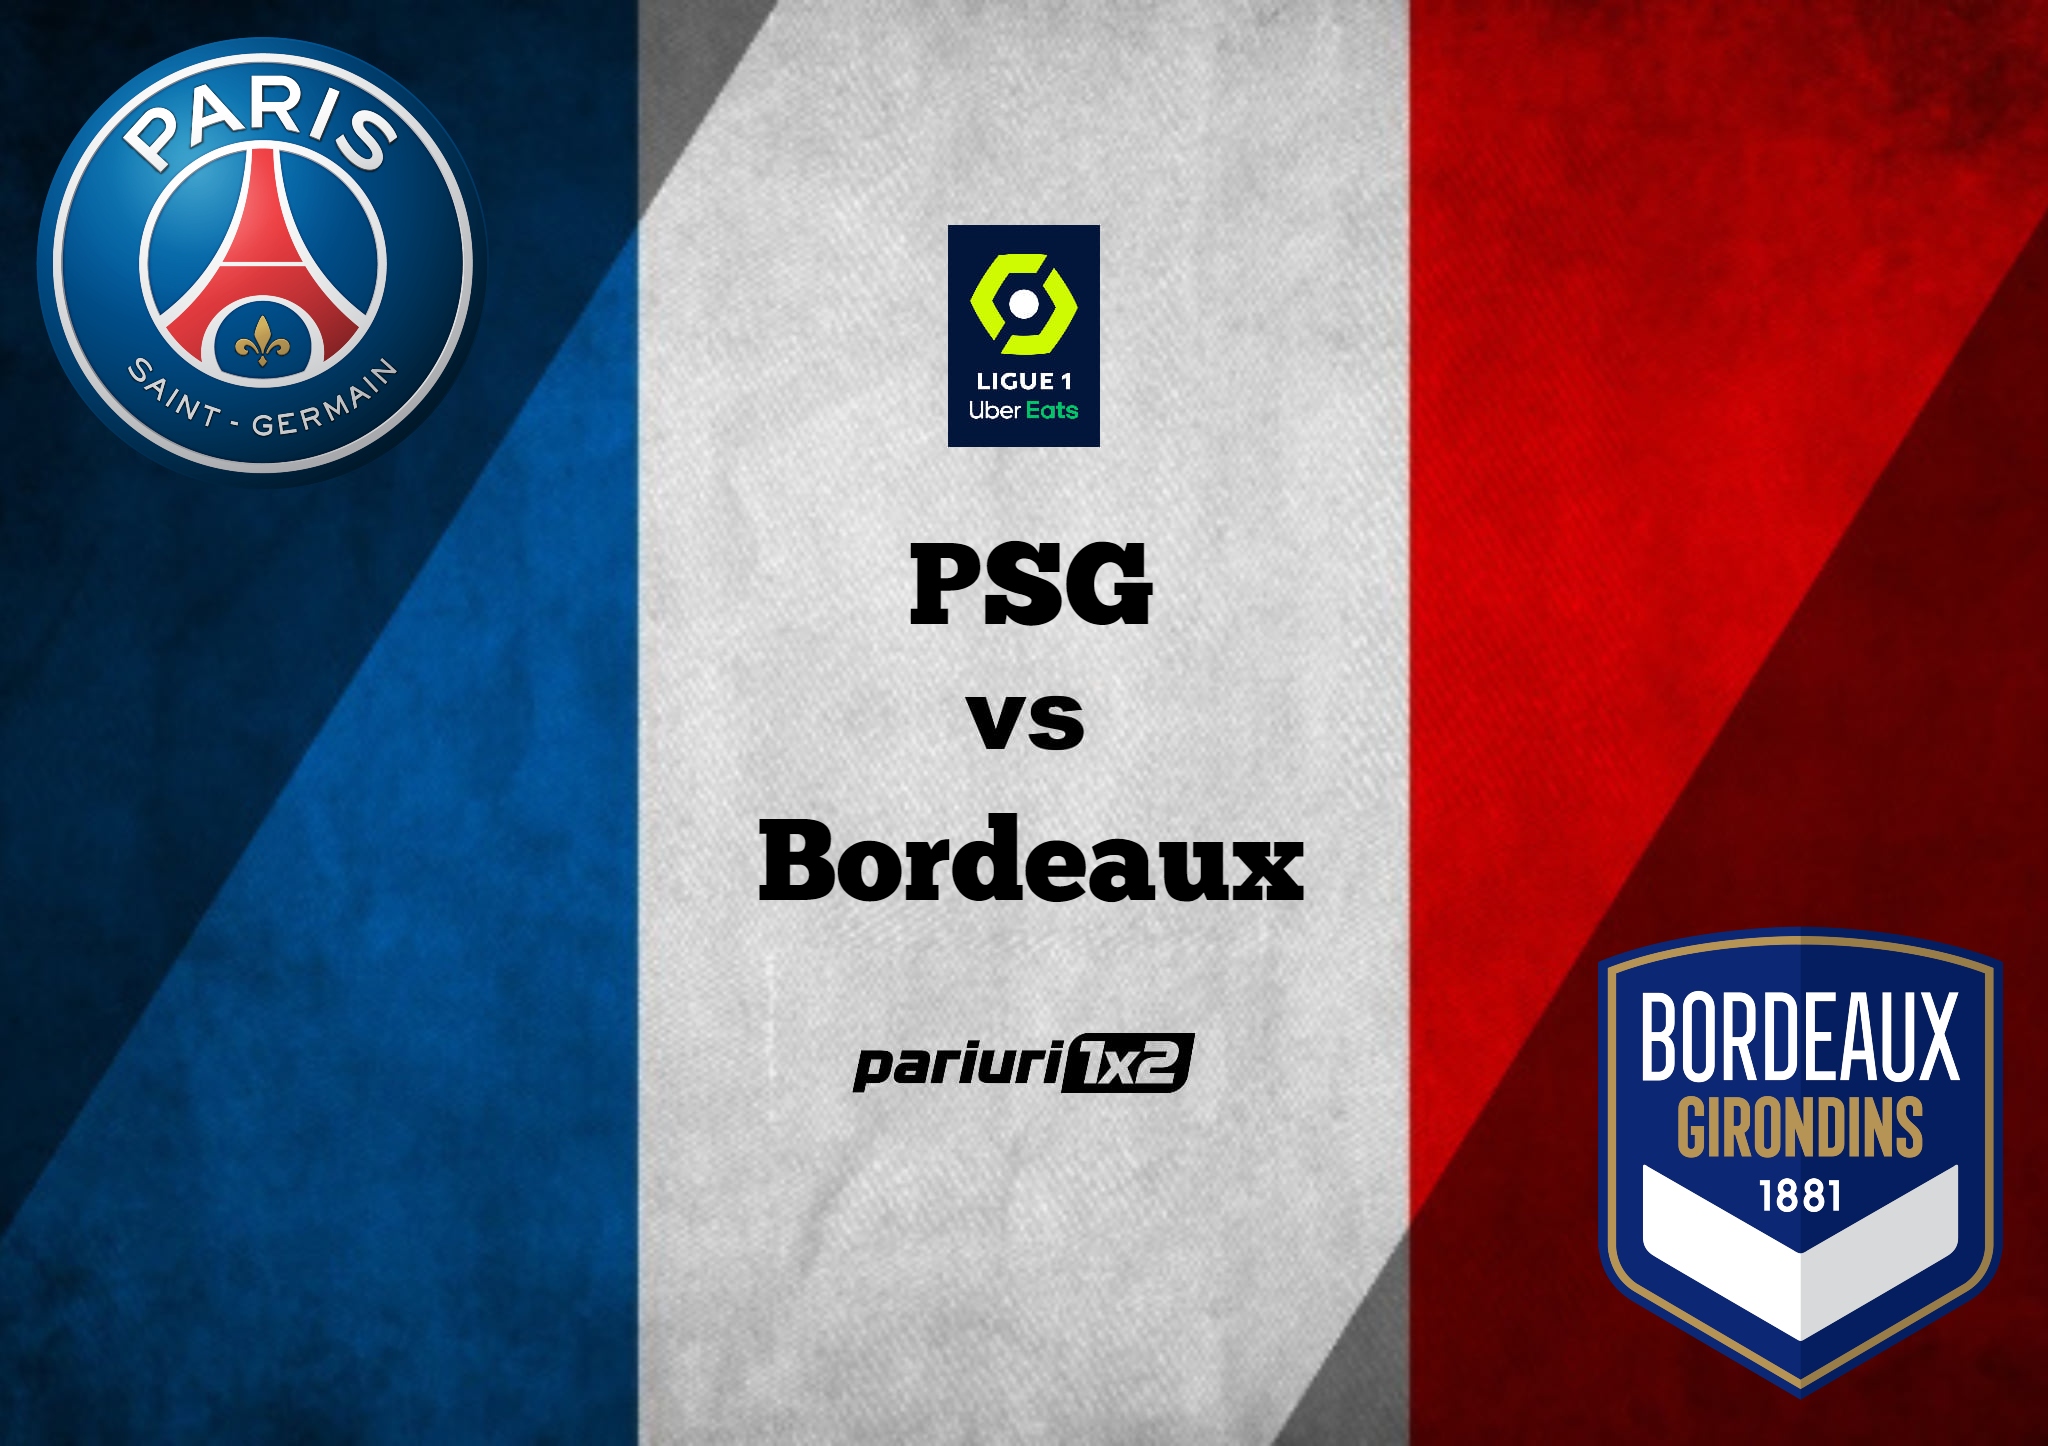 Pronosticuri Ligue 1 » PSG – Bordeaux: Tinem cont de echipa probabila a gazdelor si investim in ponturi cotate cu 1.63 si 2.00!